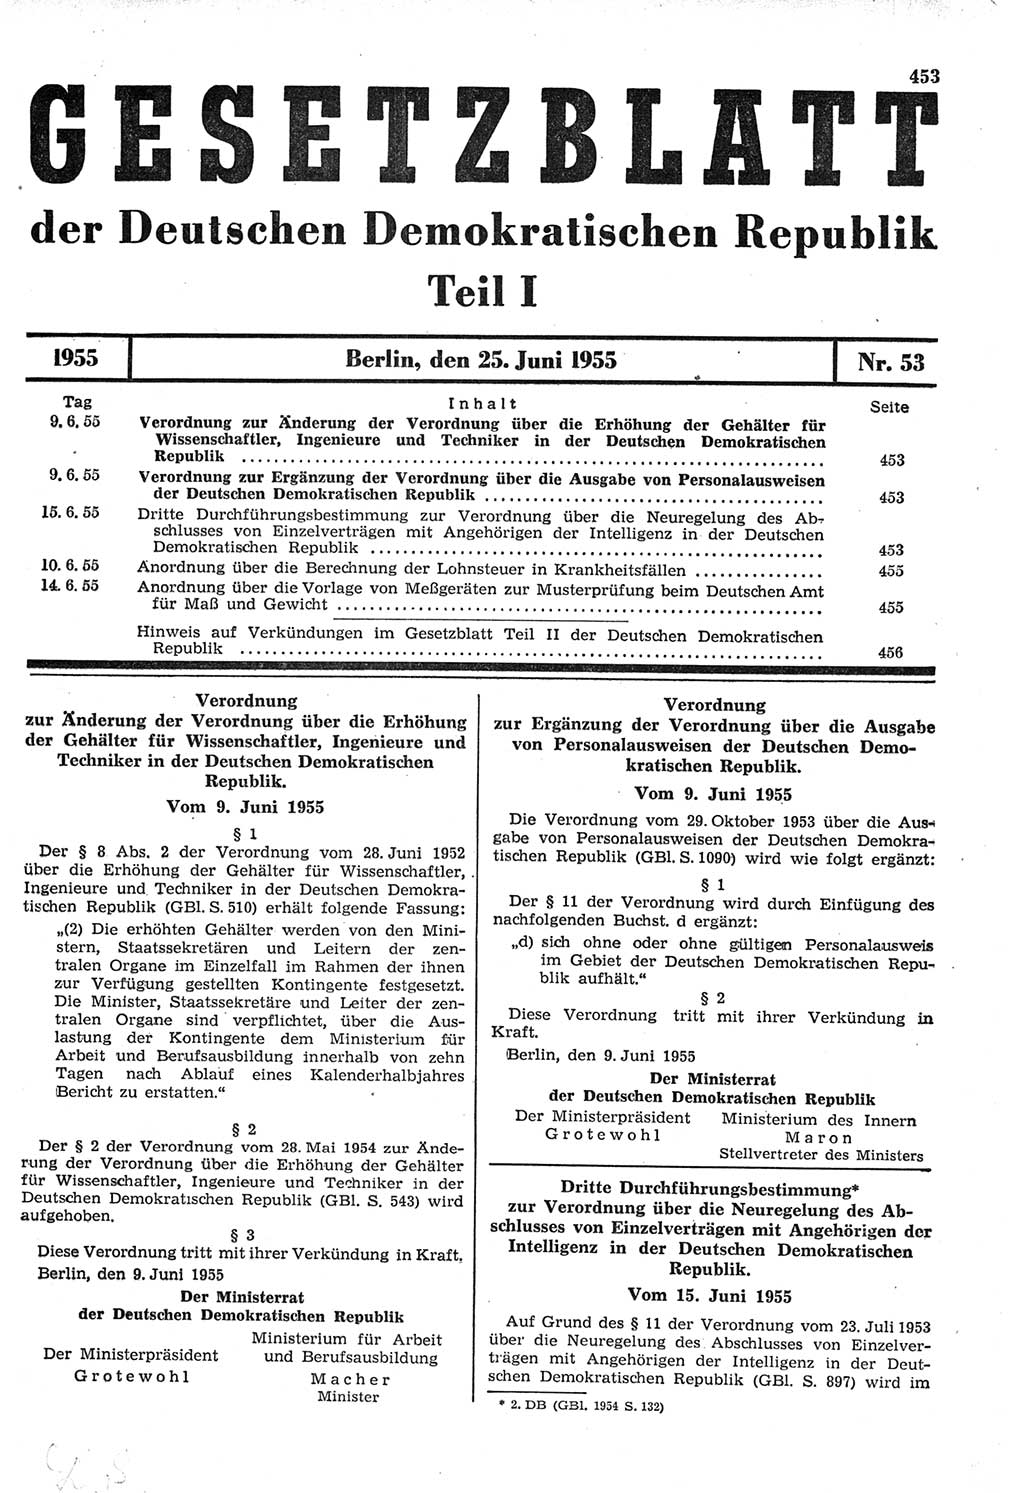 Gesetzblatt (GBl.) der Deutschen Demokratischen Republik (DDR) Teil Ⅰ 1955, Seite 453 (GBl. DDR Ⅰ 1955, S. 453)